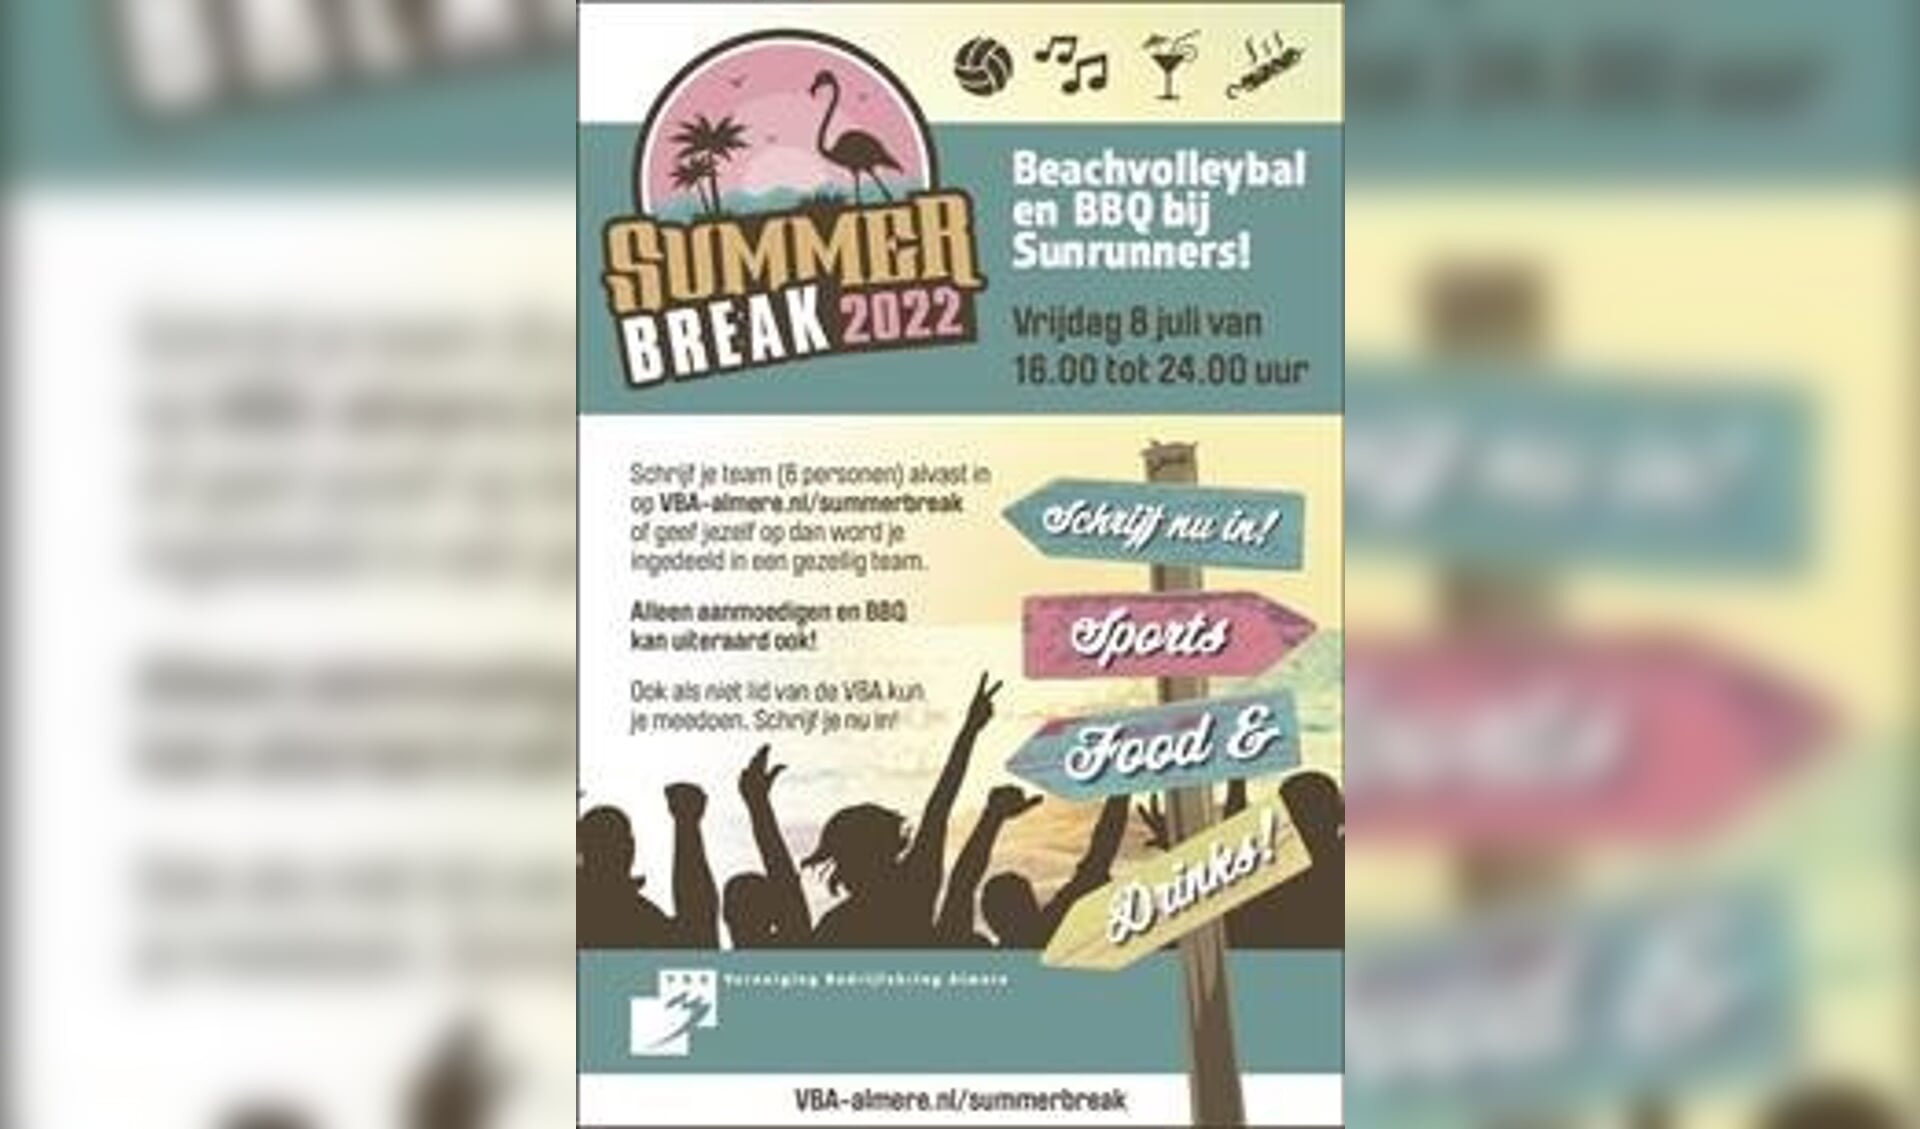 Het Summer Break Event vindt plaats op 8 juli aanstaande. 